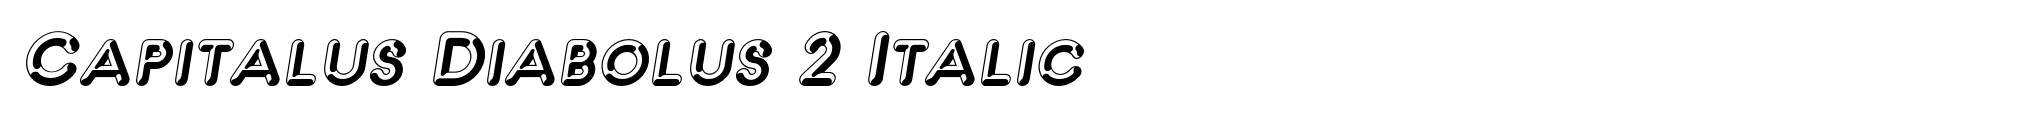 Capitalus Diabolus 2 Italic image